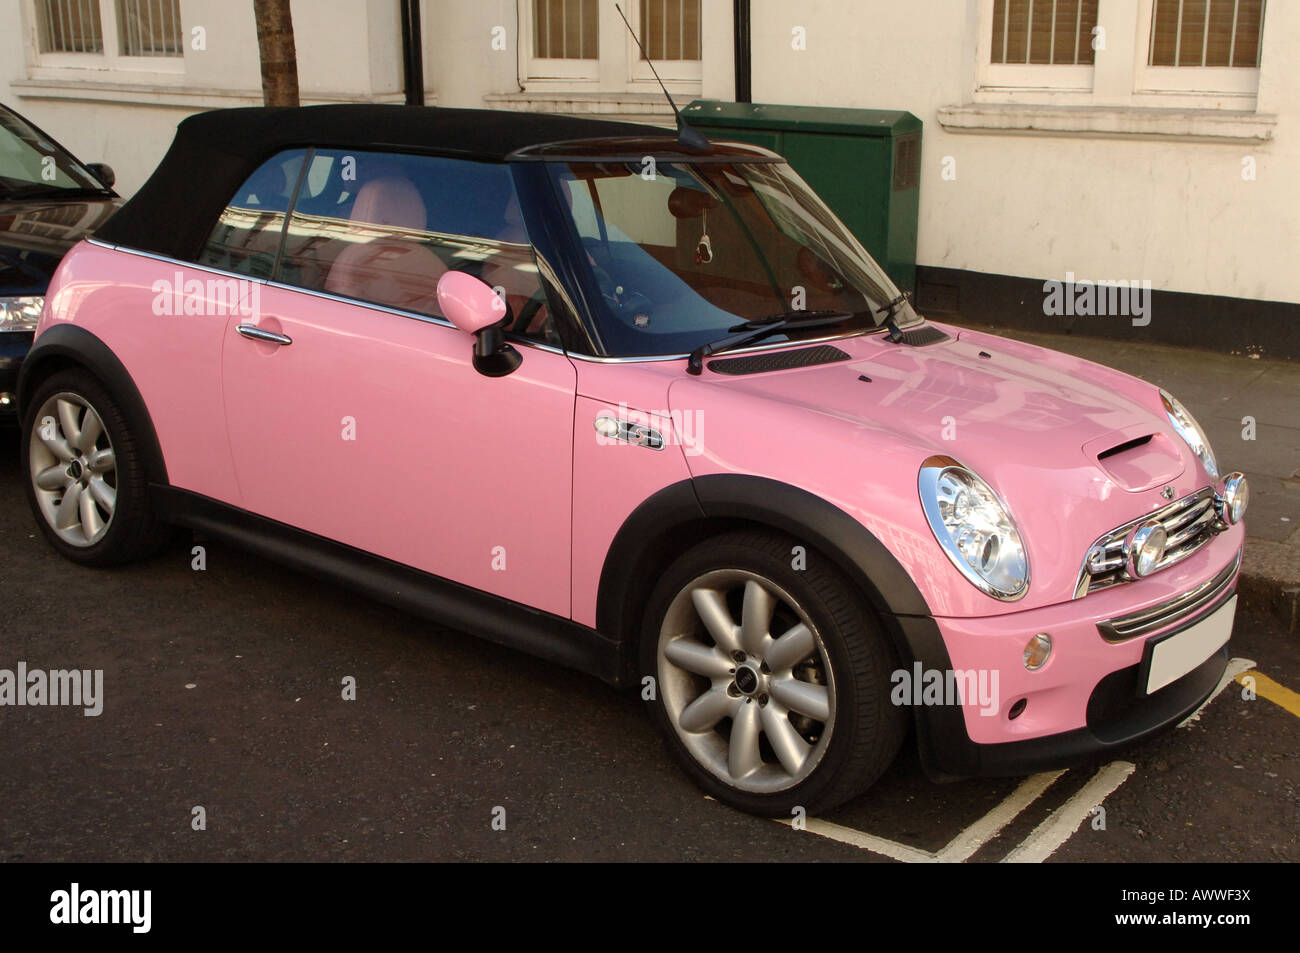 Pink mini car immagini e fotografie stock ad alta risoluzione - Alamy